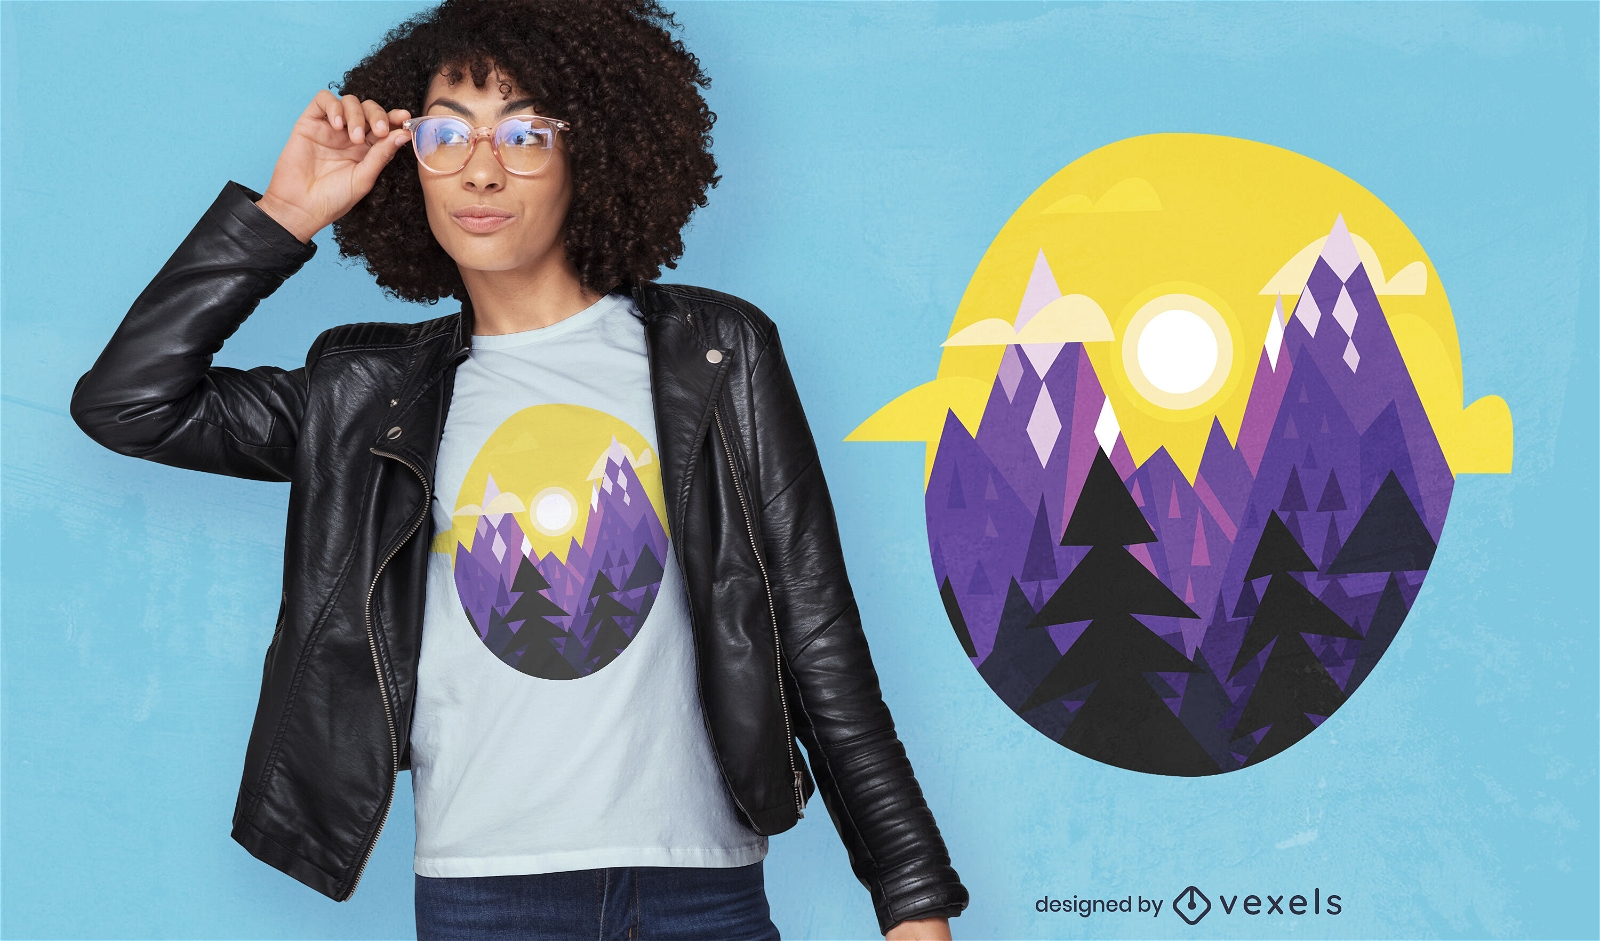 Diseño geométrico de camiseta con paisaje de montañas y árboles.